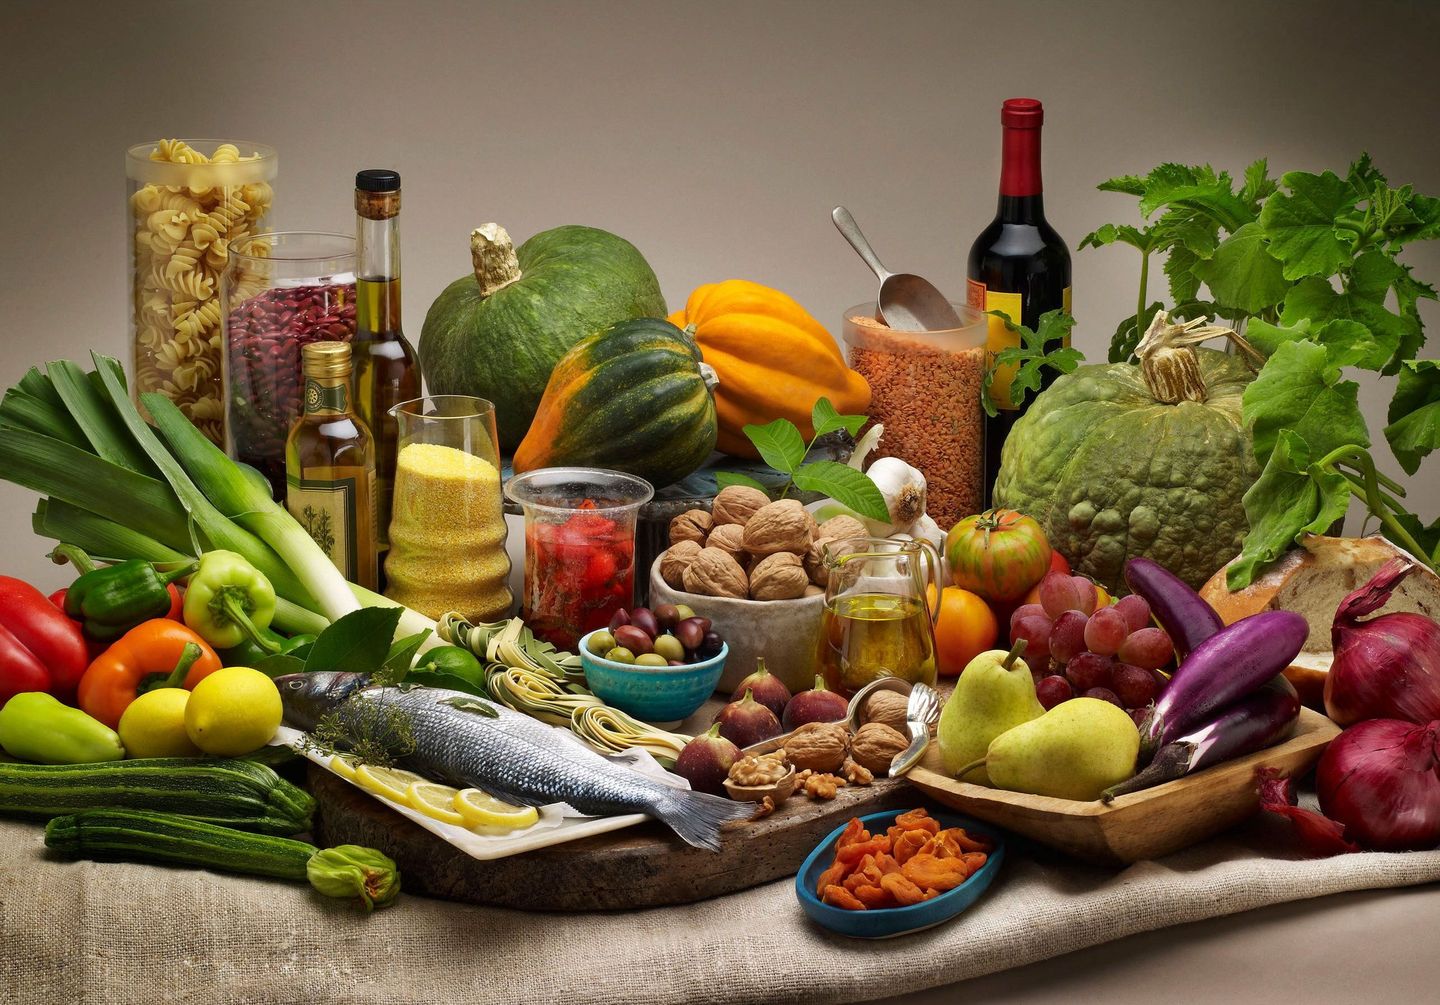 Akdeniz diyeti tüketen kişilerde bunama riski azaldı, çalışma bulguları